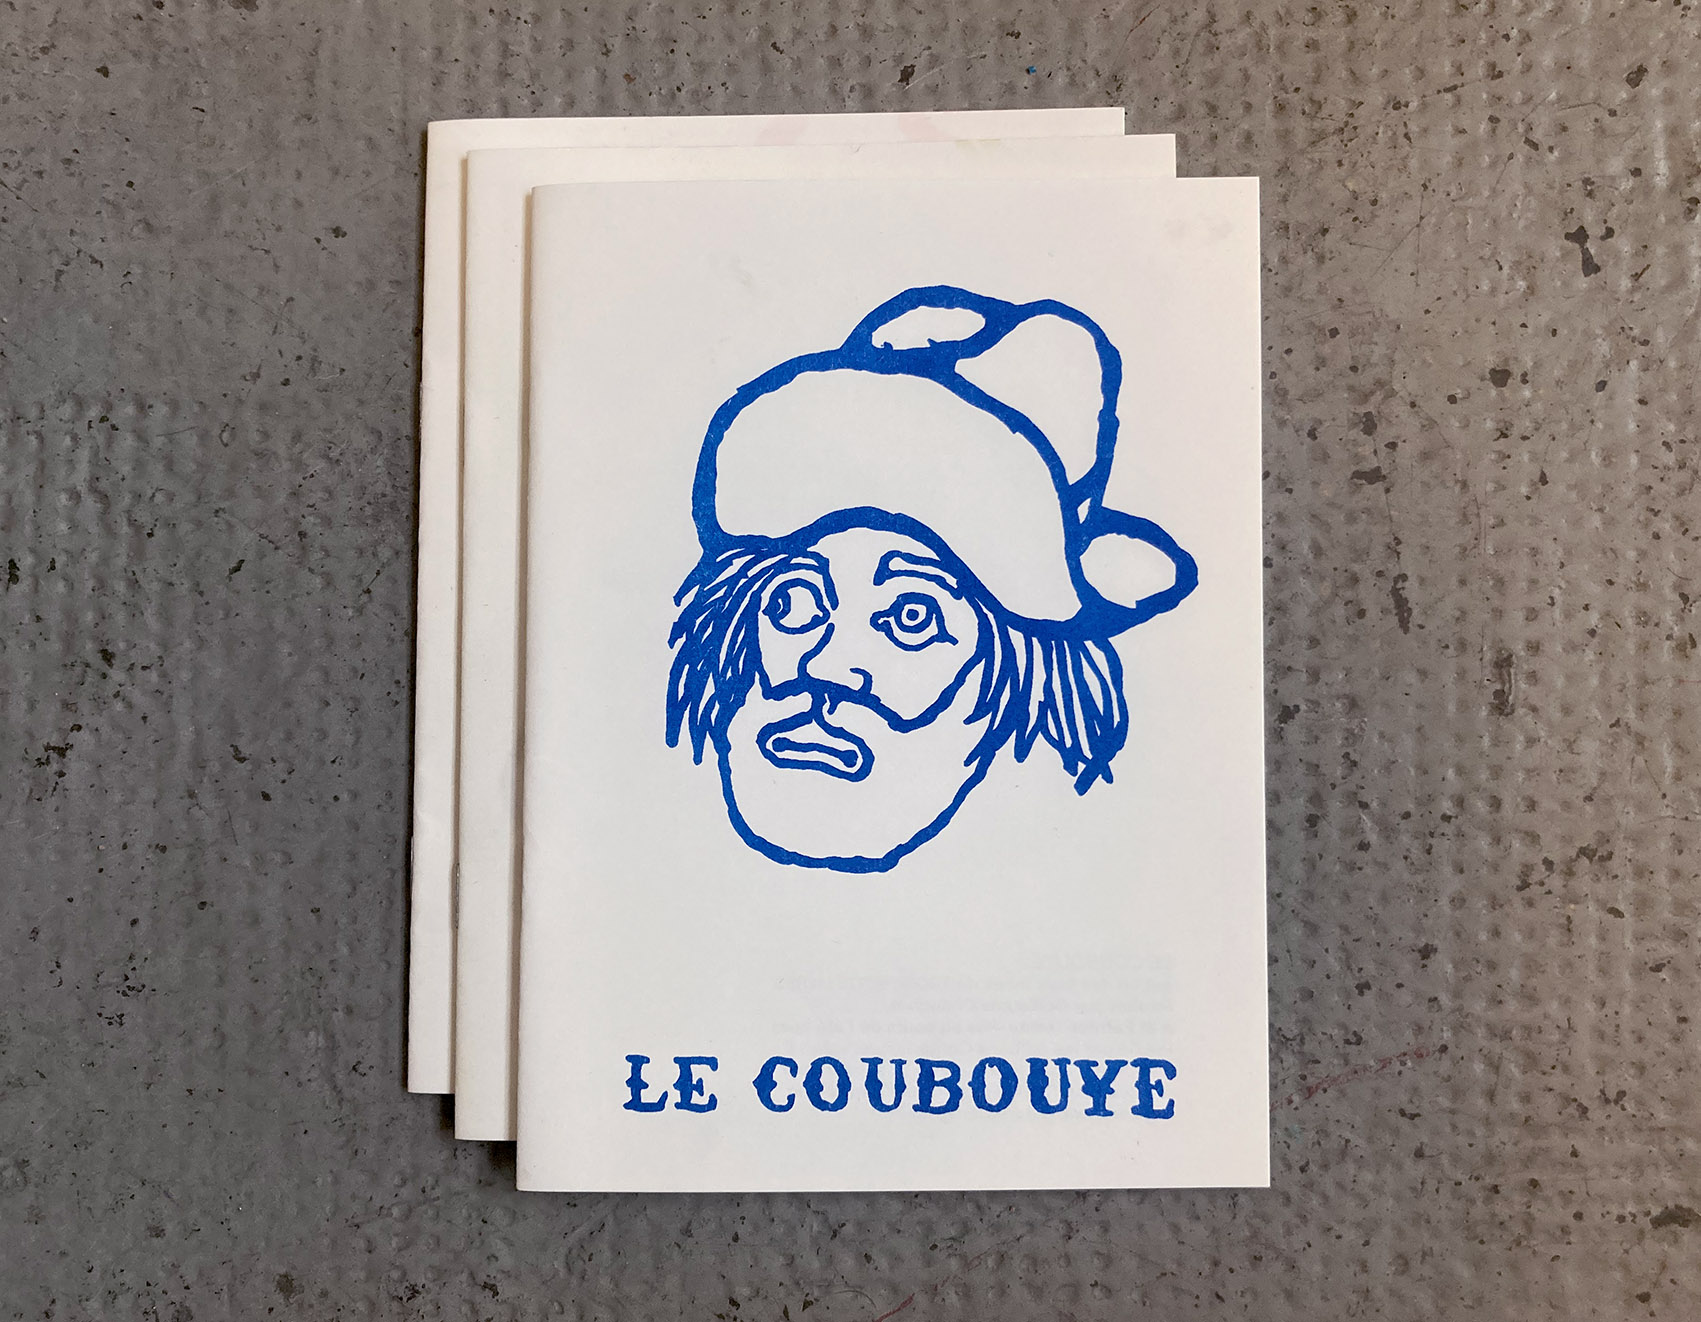 Le Coubouye